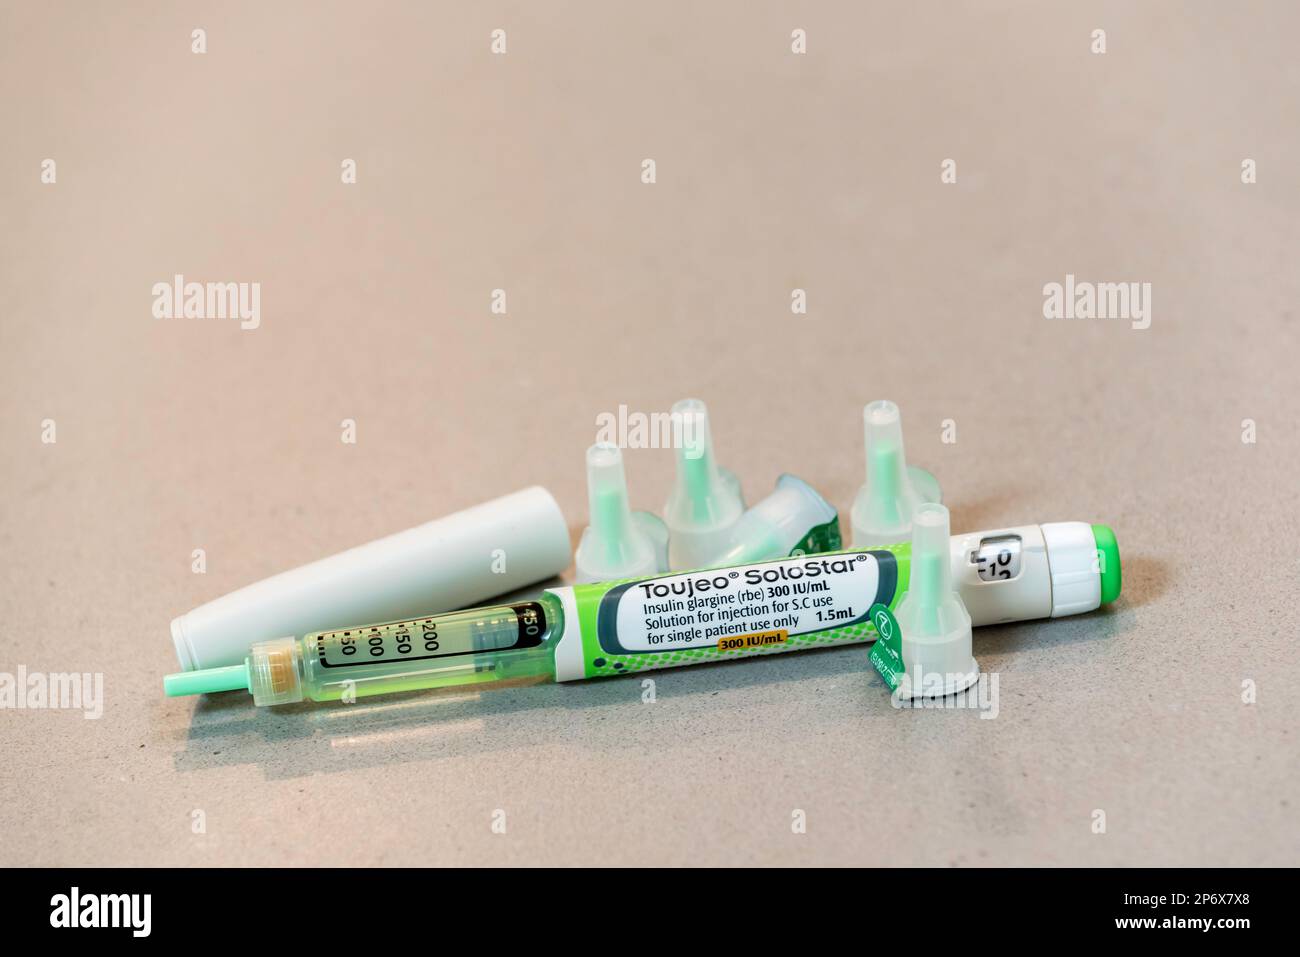 Sanofi insulina glargine farmaco Toujeo un'insulina ad azione log usata da Type1 diabetici, e BD ago suggerimenti Foto Stock